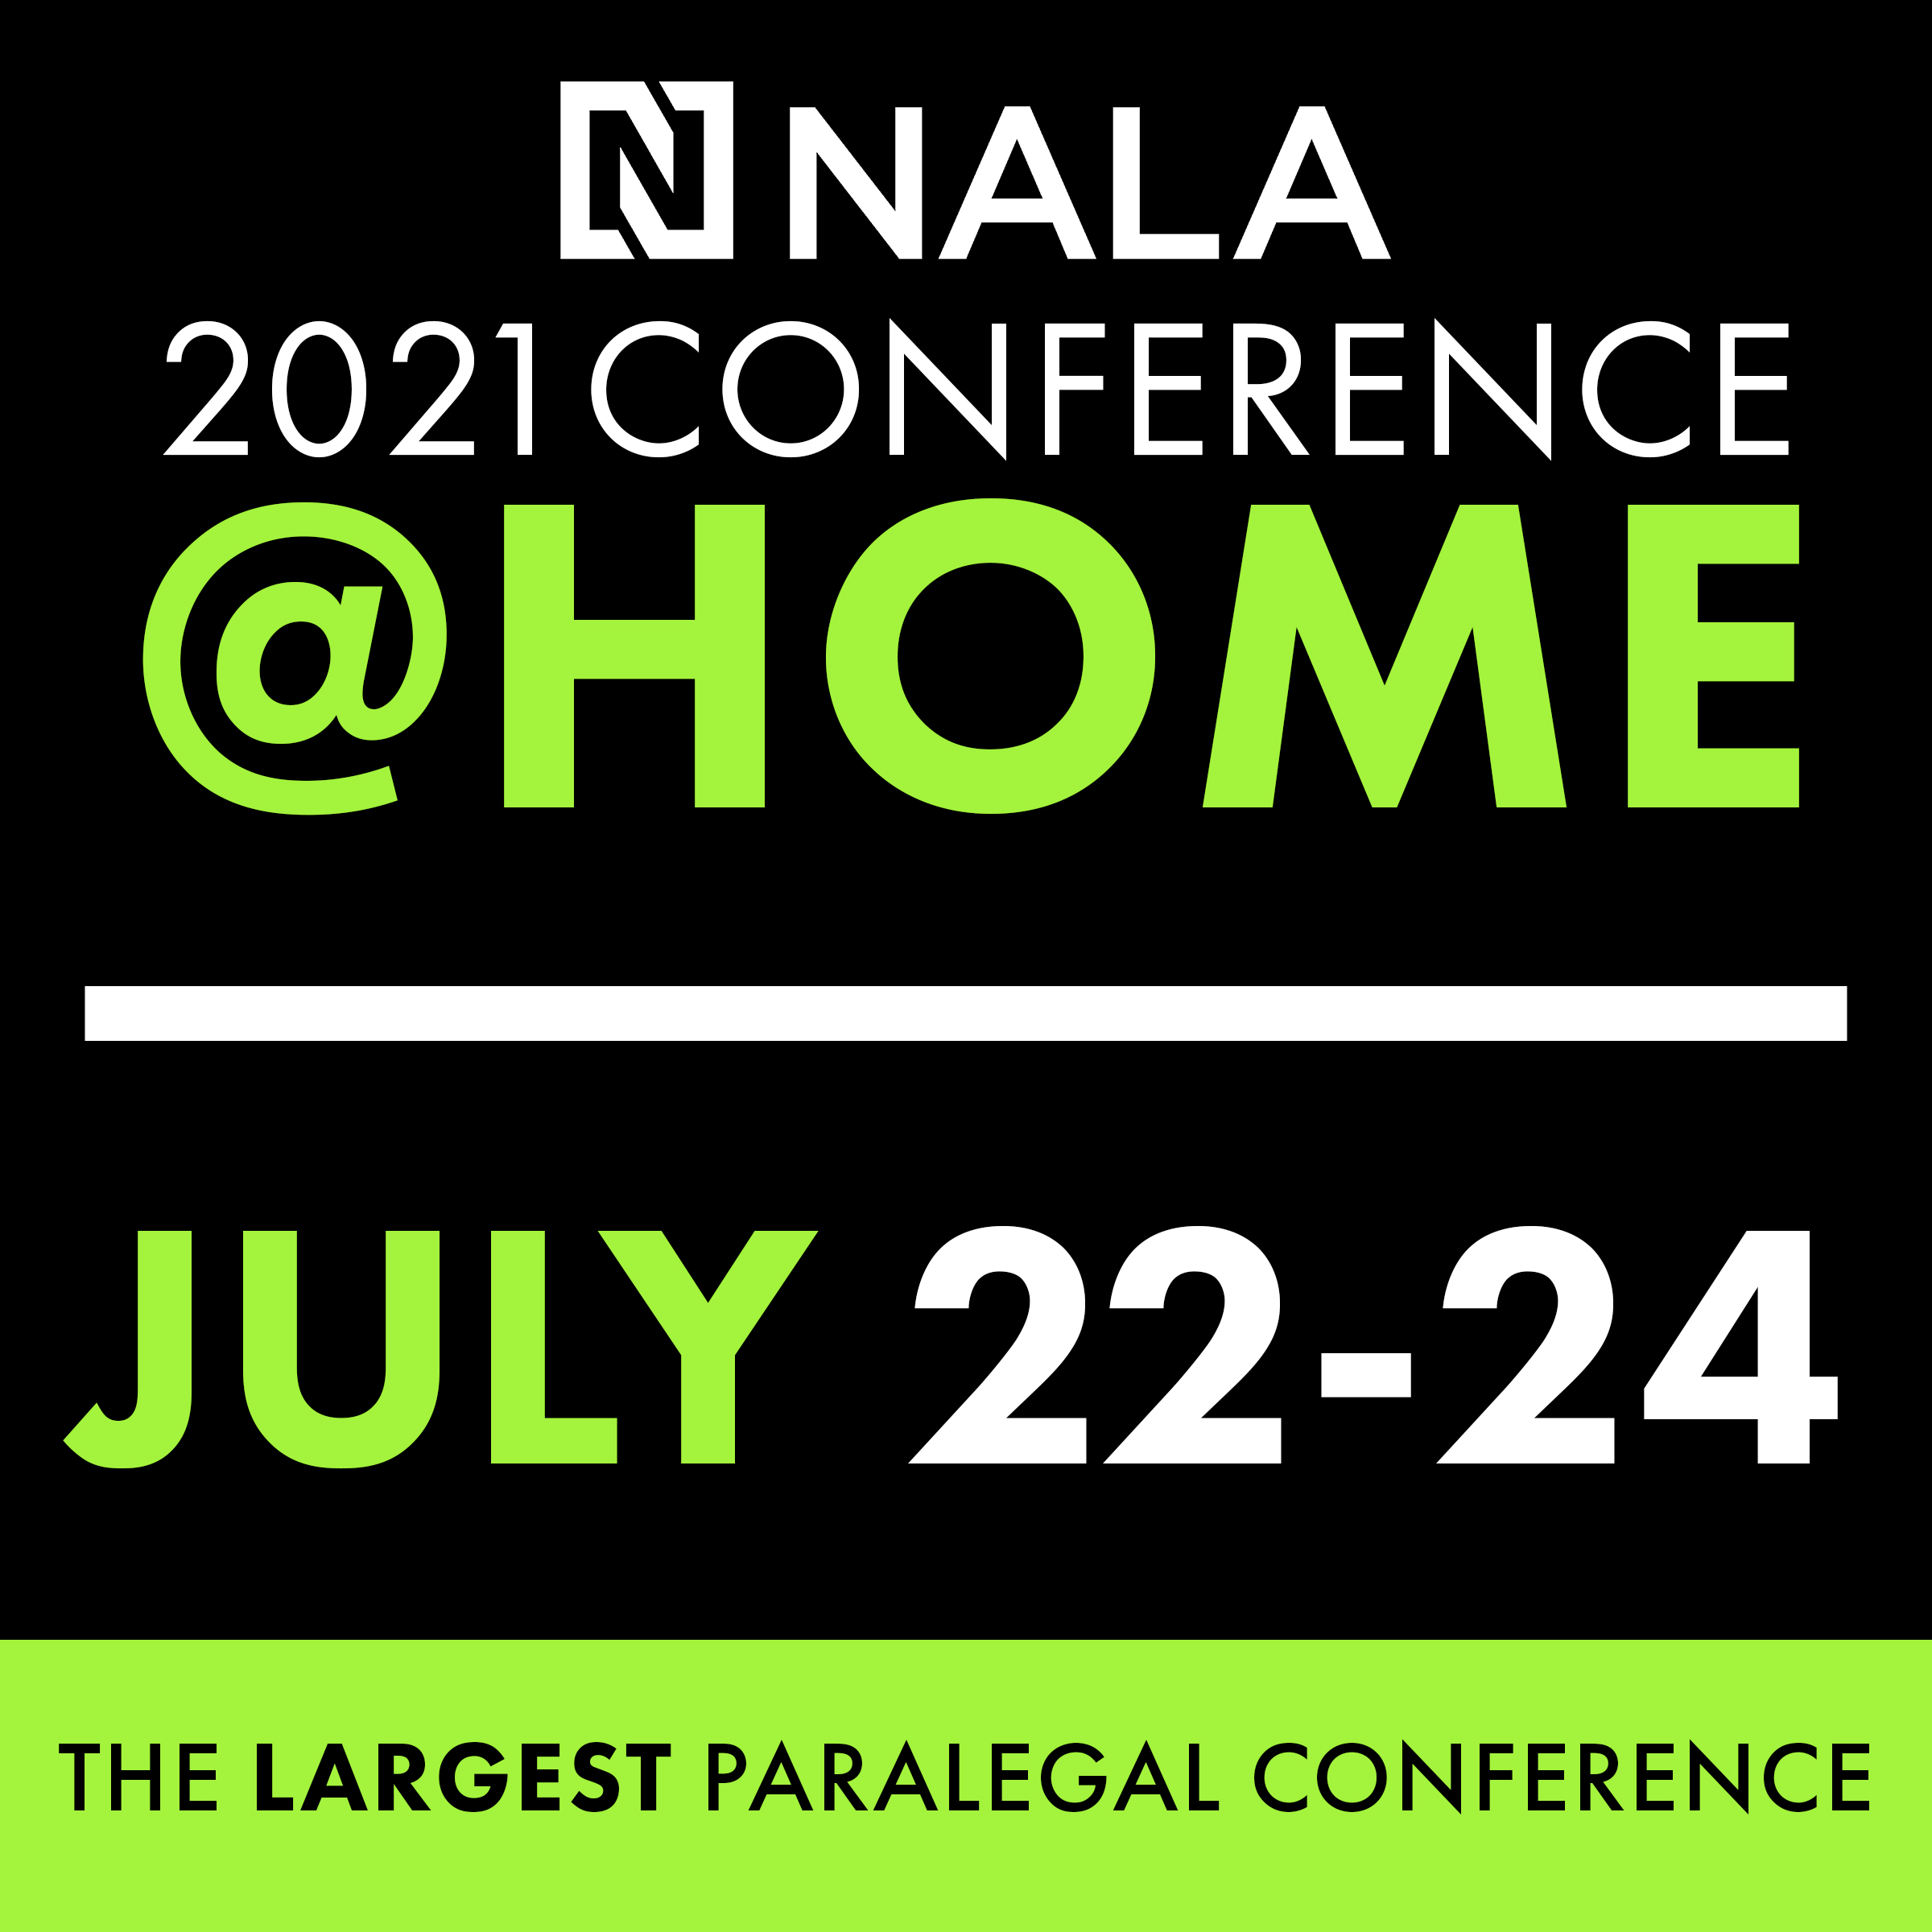 NALA Conference @ Home